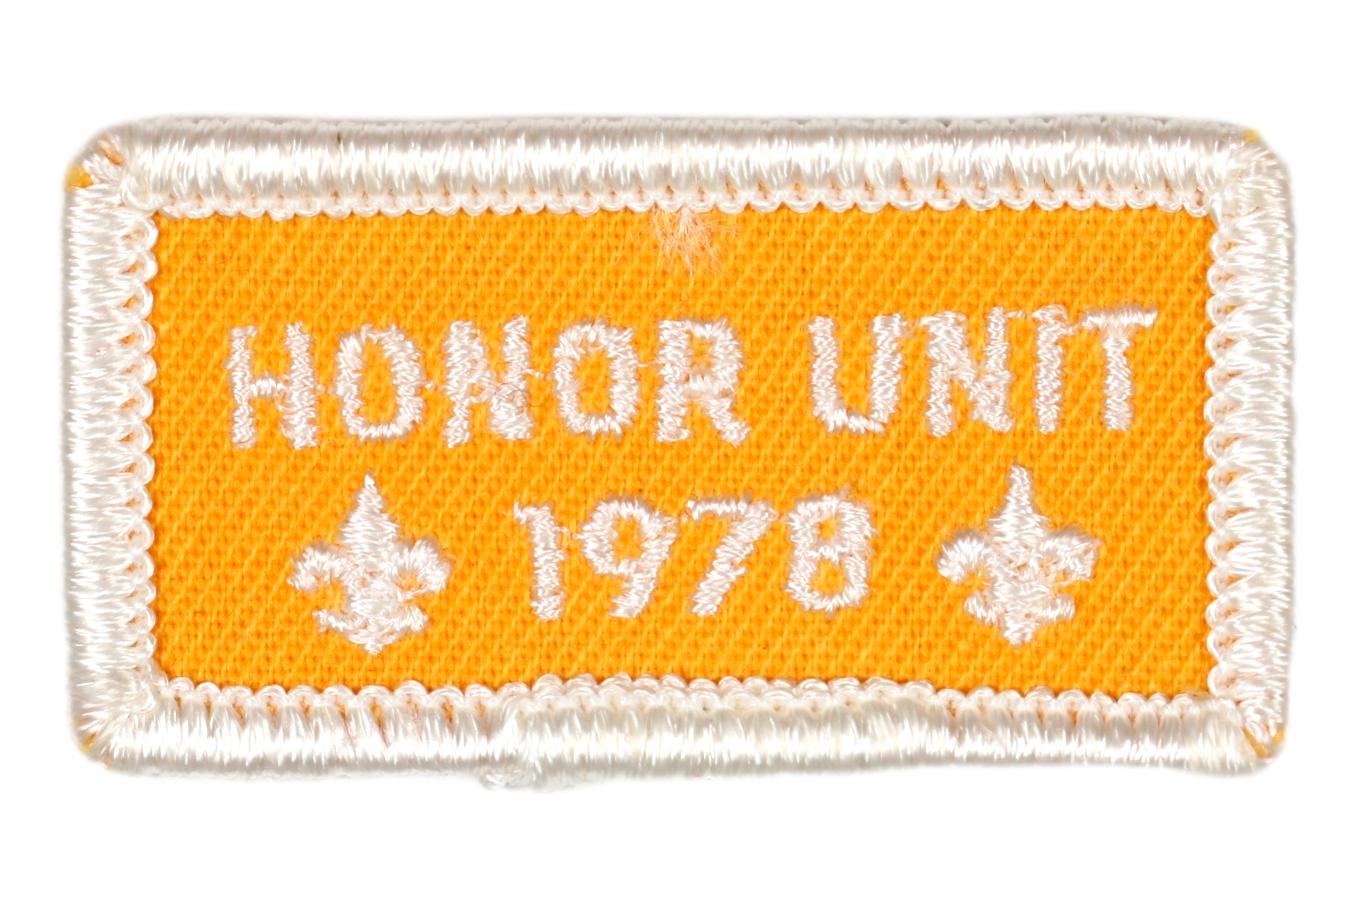 1978 Honor Unit Patch